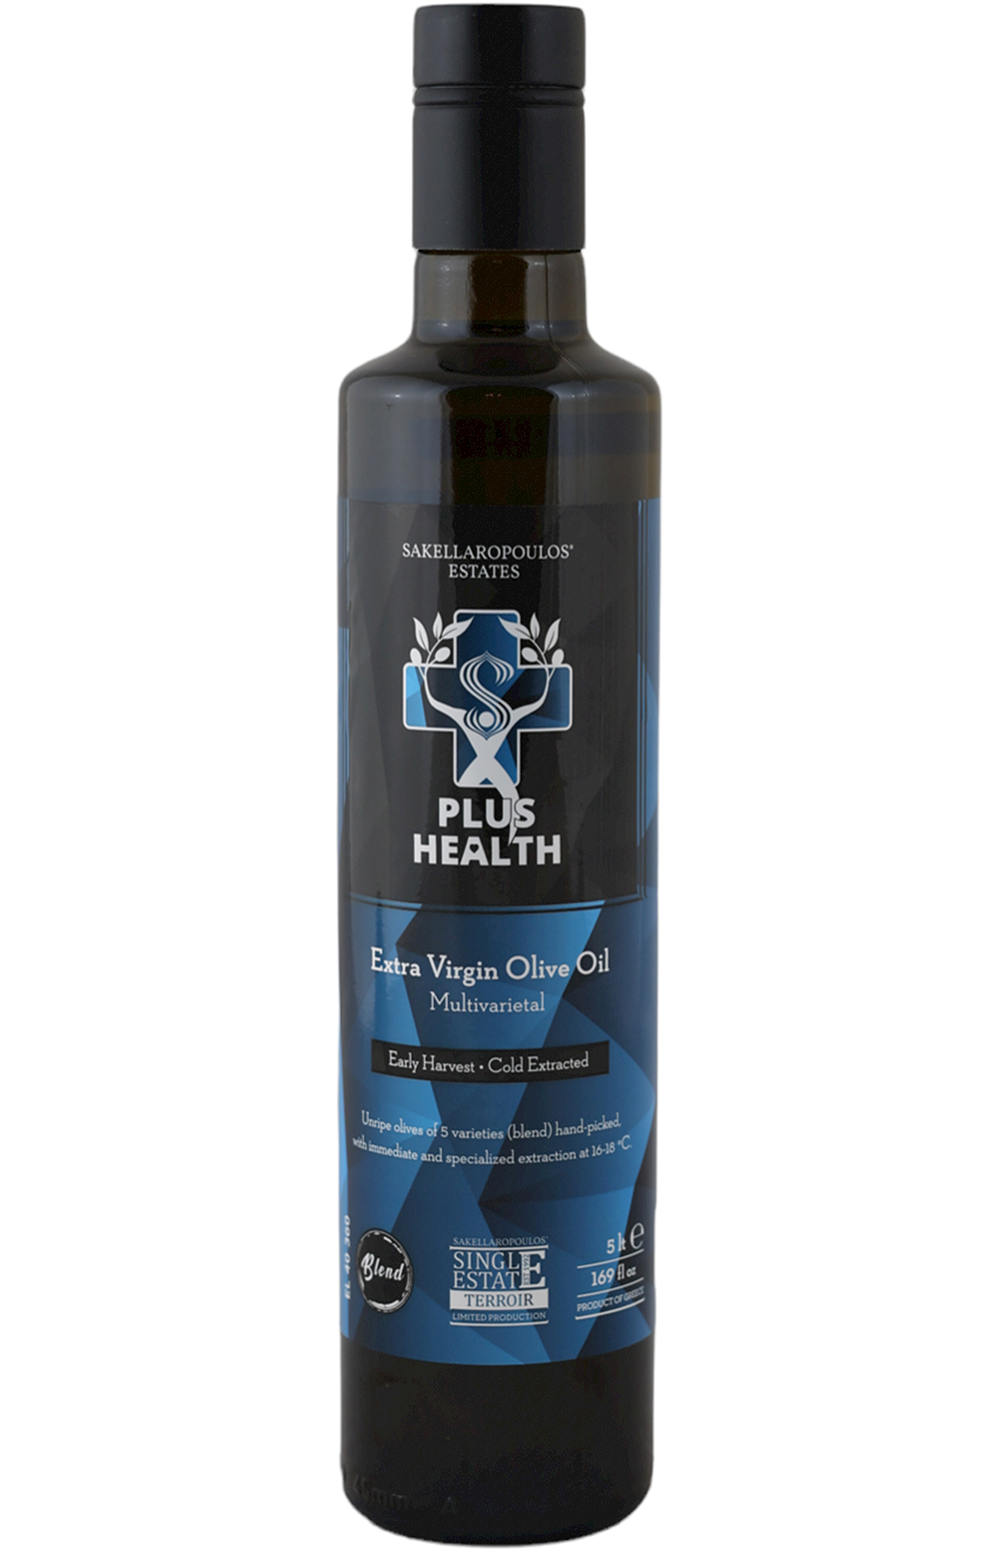 Plus Health Blue Multivarietal EVOO Olive Oil